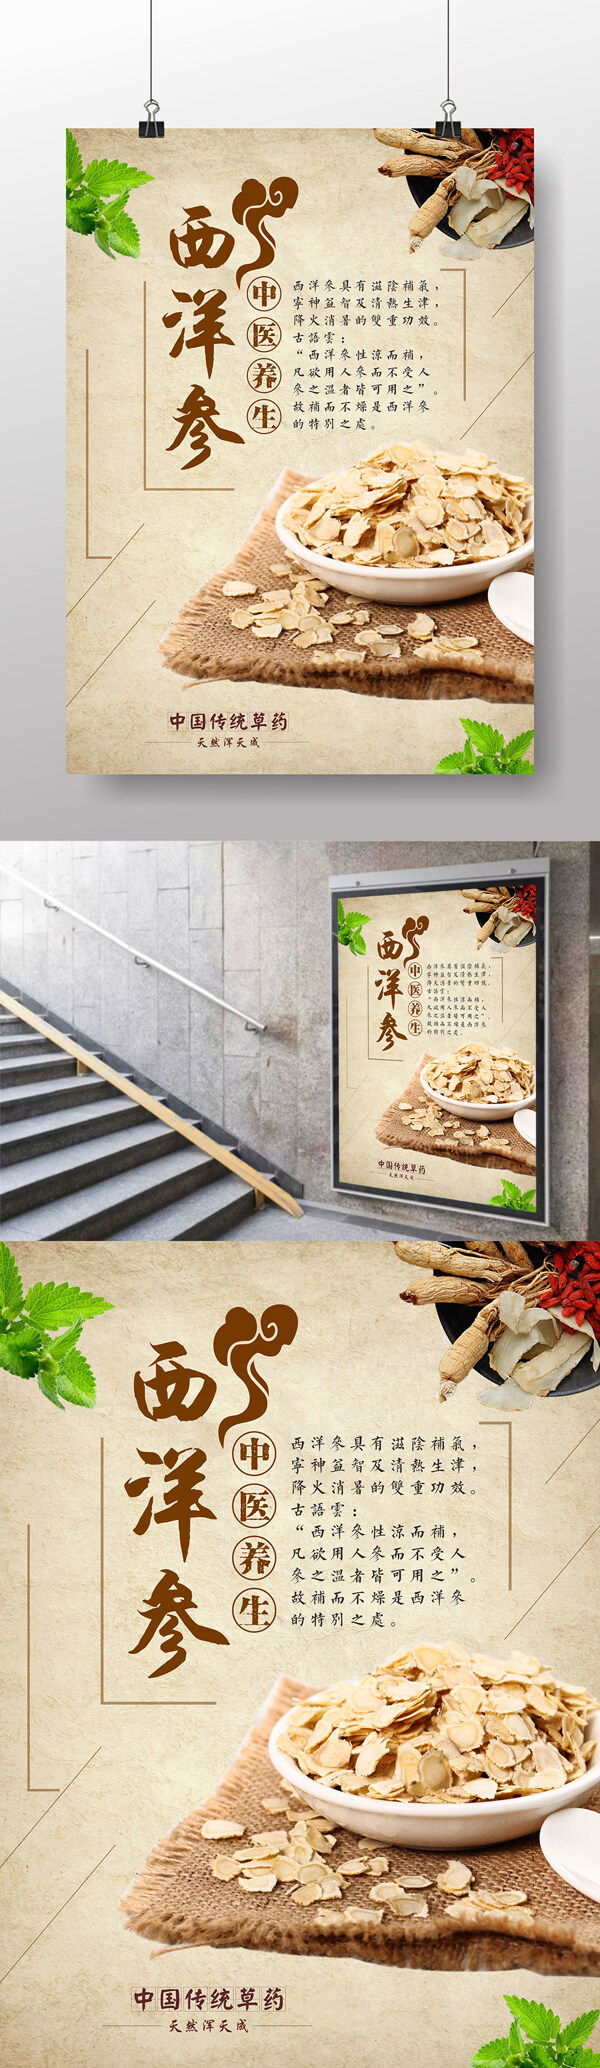 西洋参中国传统药材海报